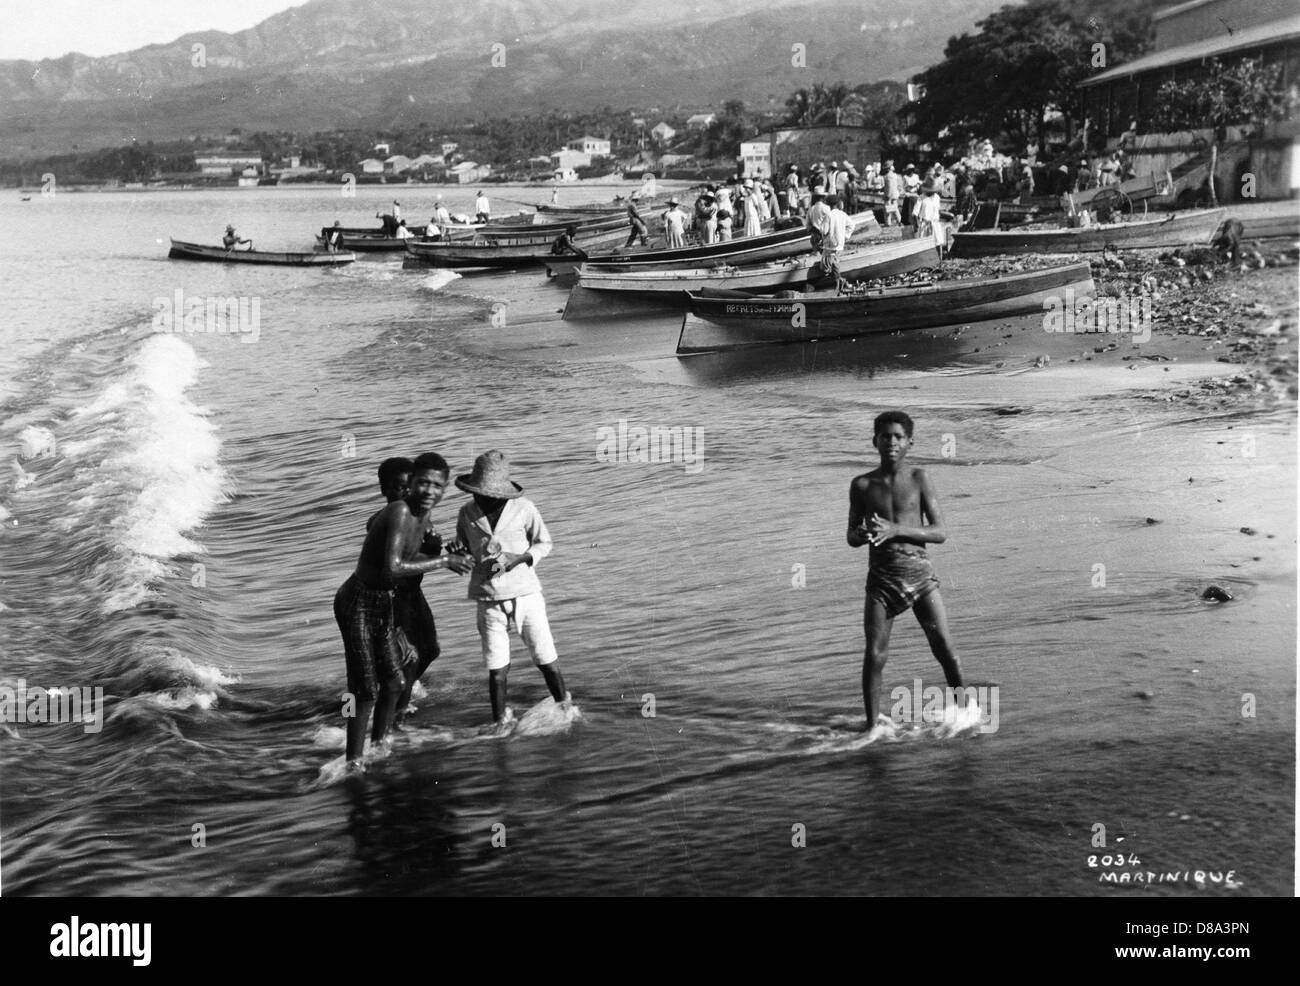 St Pierre, Martinique, ca 1930 Stock Photo